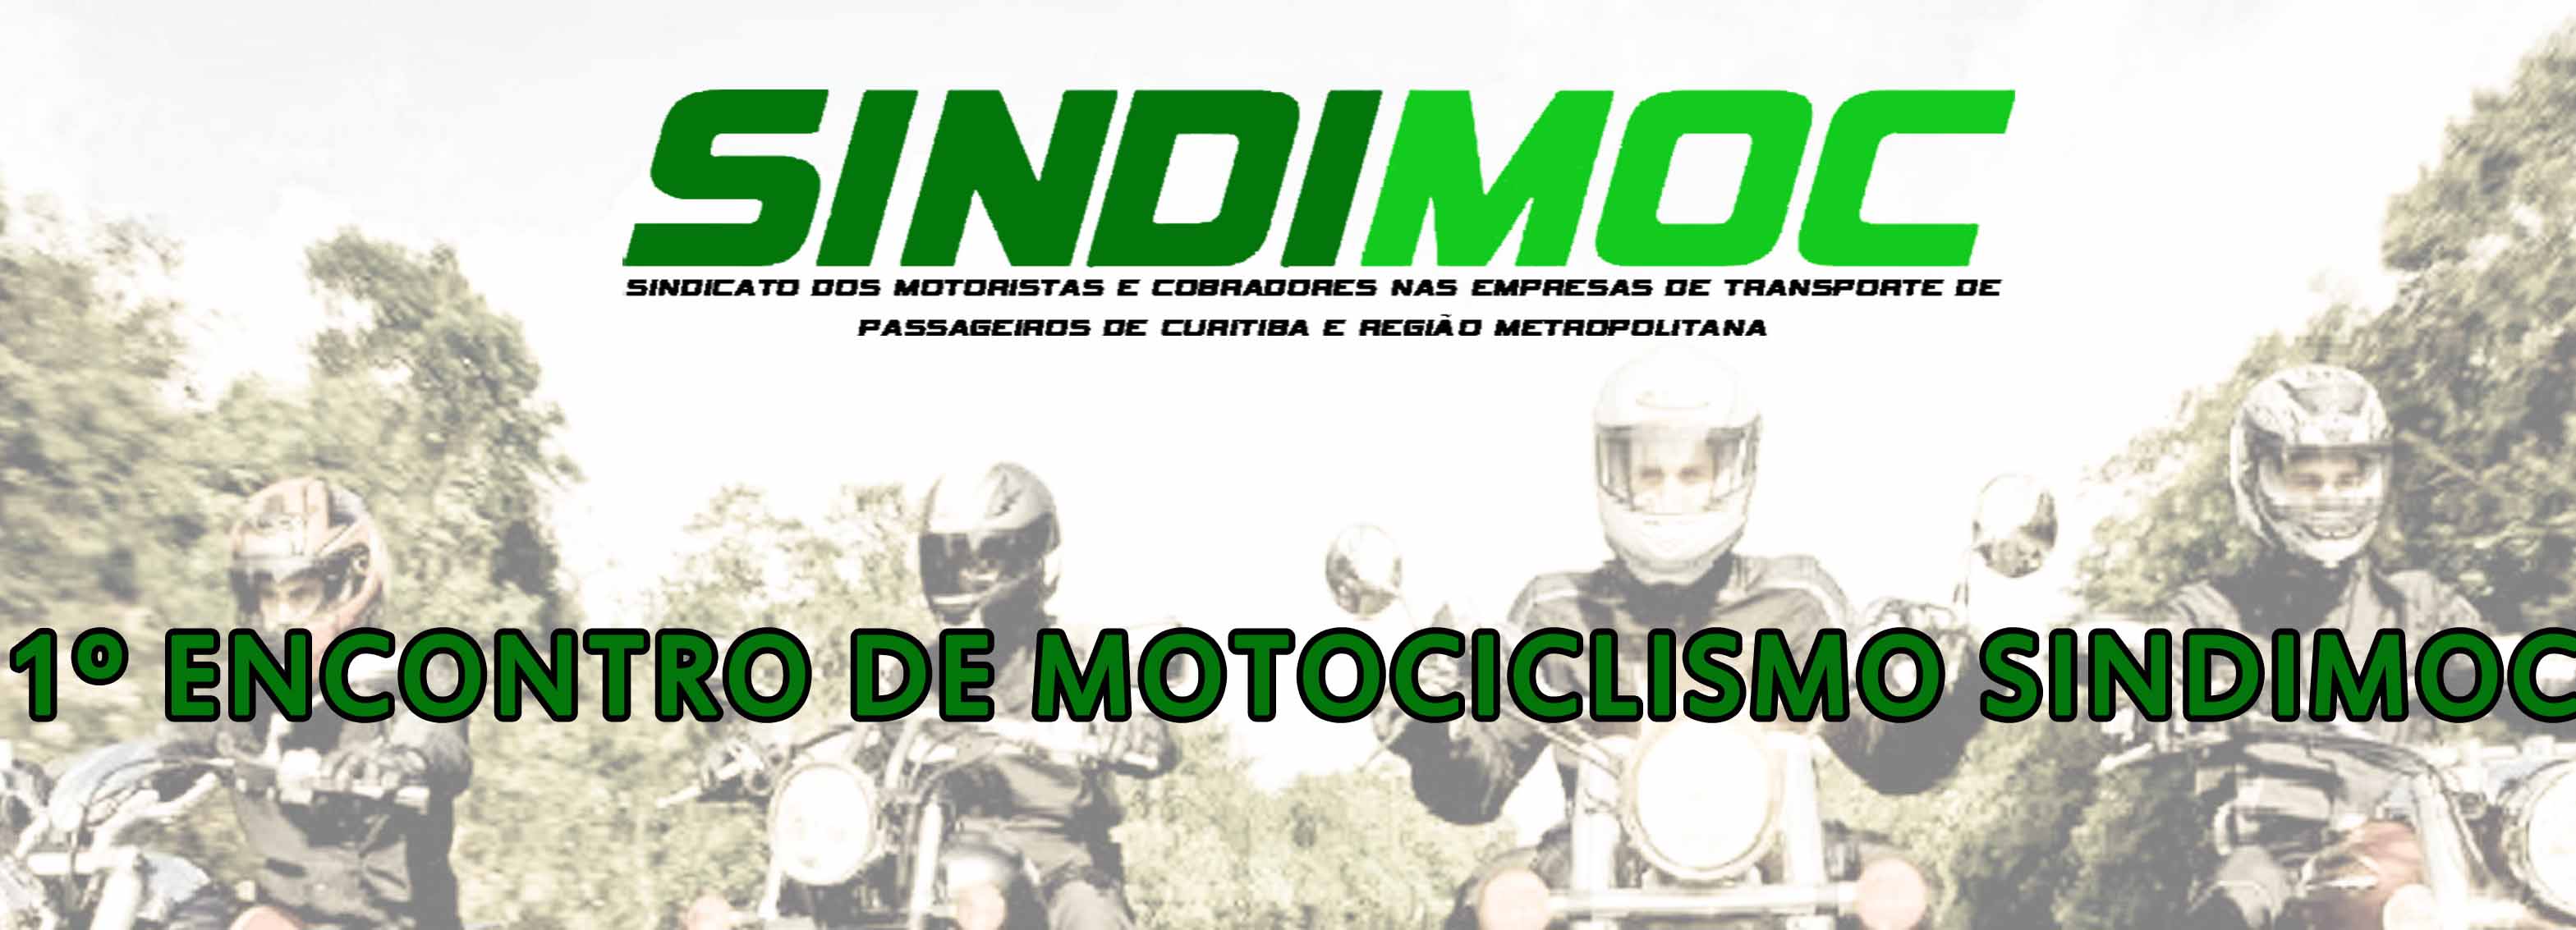 Em homenagem ao Dia do Trabalhador, SINDIMOC promove encontro de motociclismo